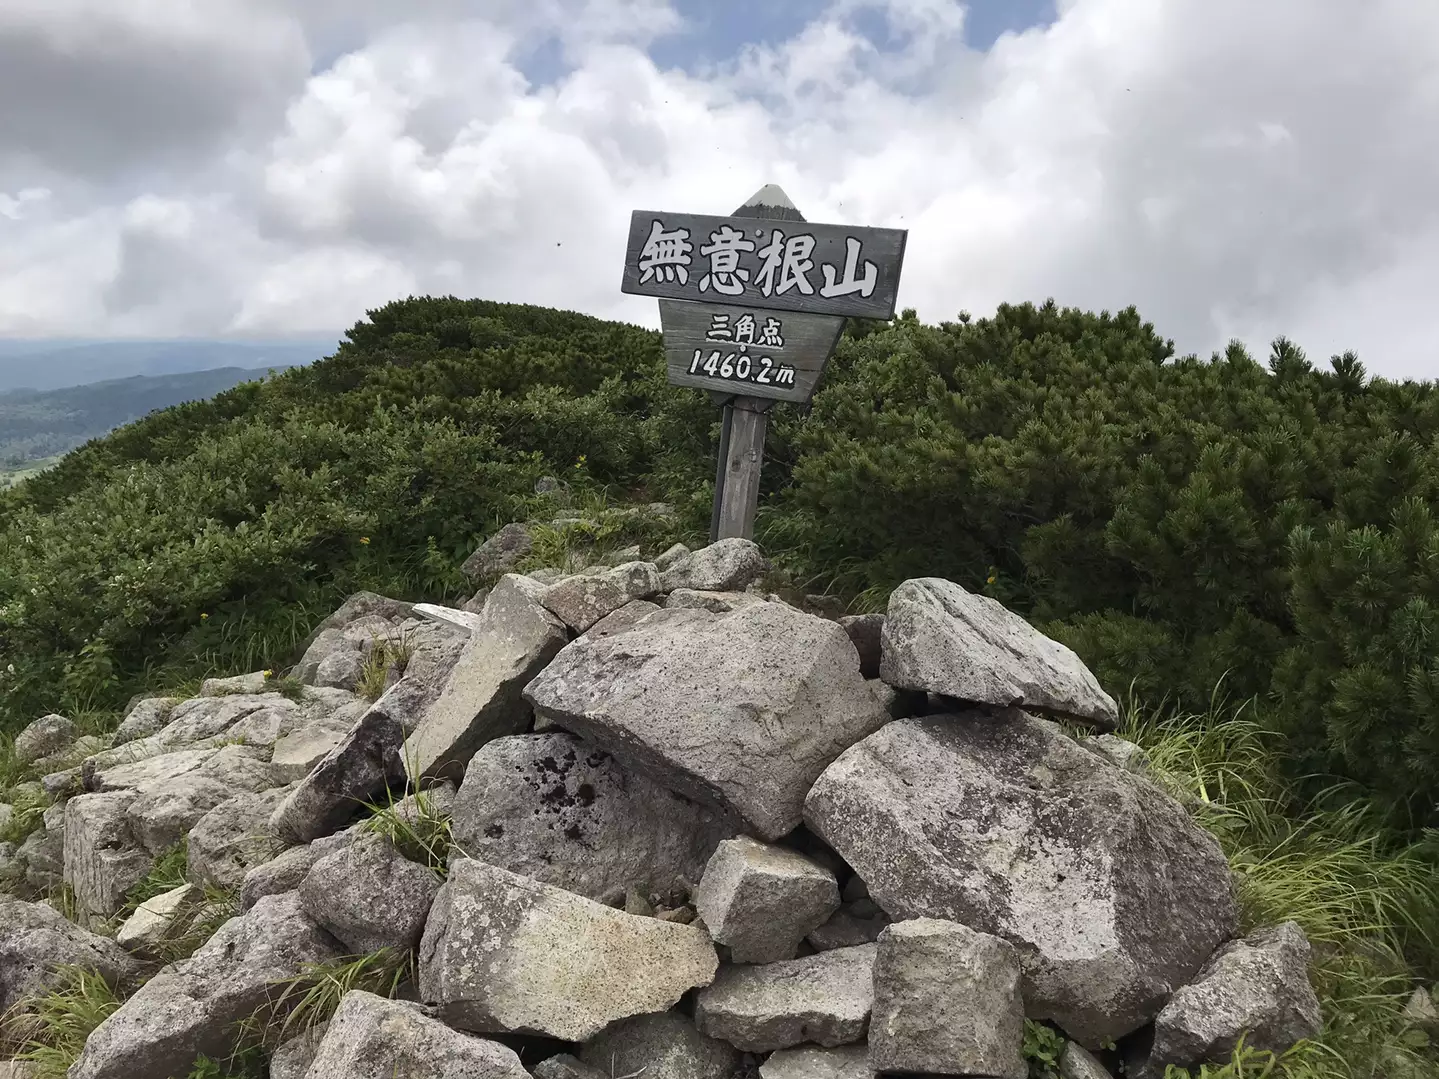 無意根山 薄別コース 19 07 21 Keinomさんの無意根山の活動データ Yamap ヤマップ